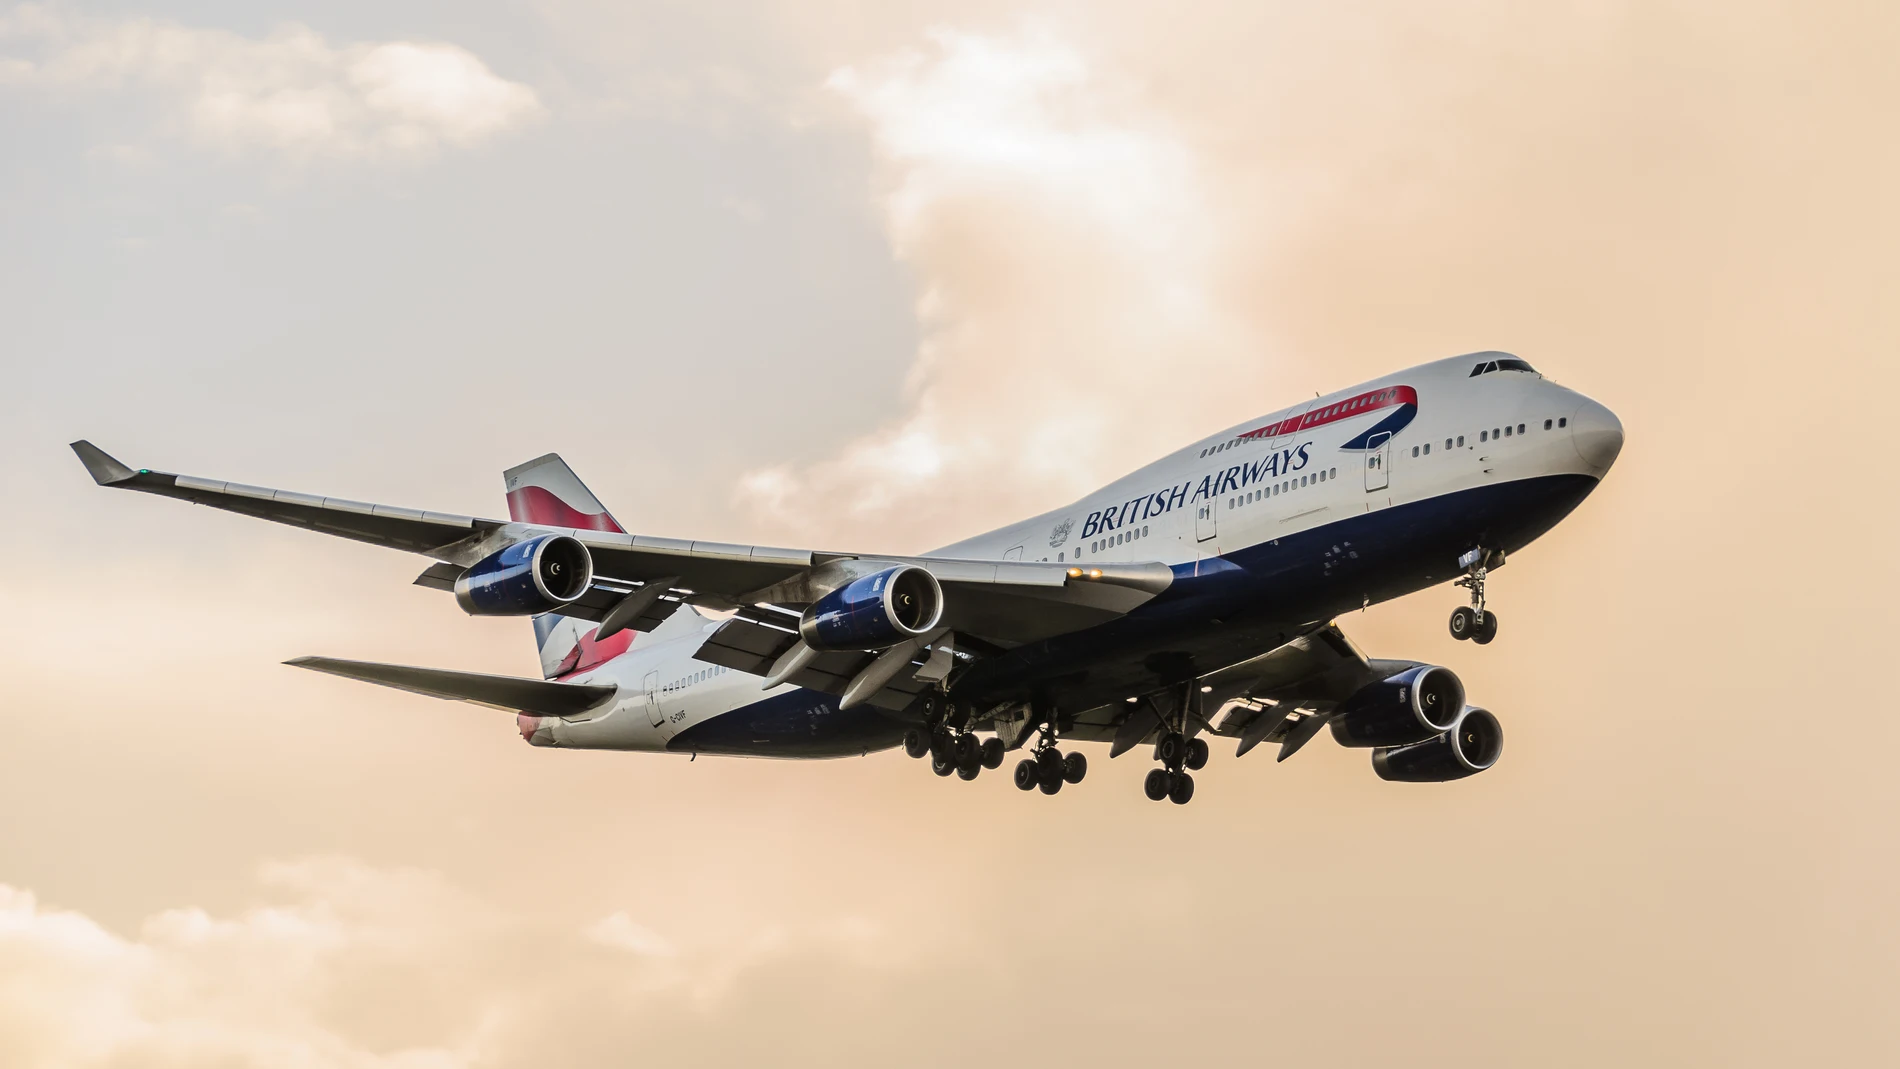 Un Boeing 747-400 de la aerolínea británica British Airways aterriza en Heathrow, Londres.